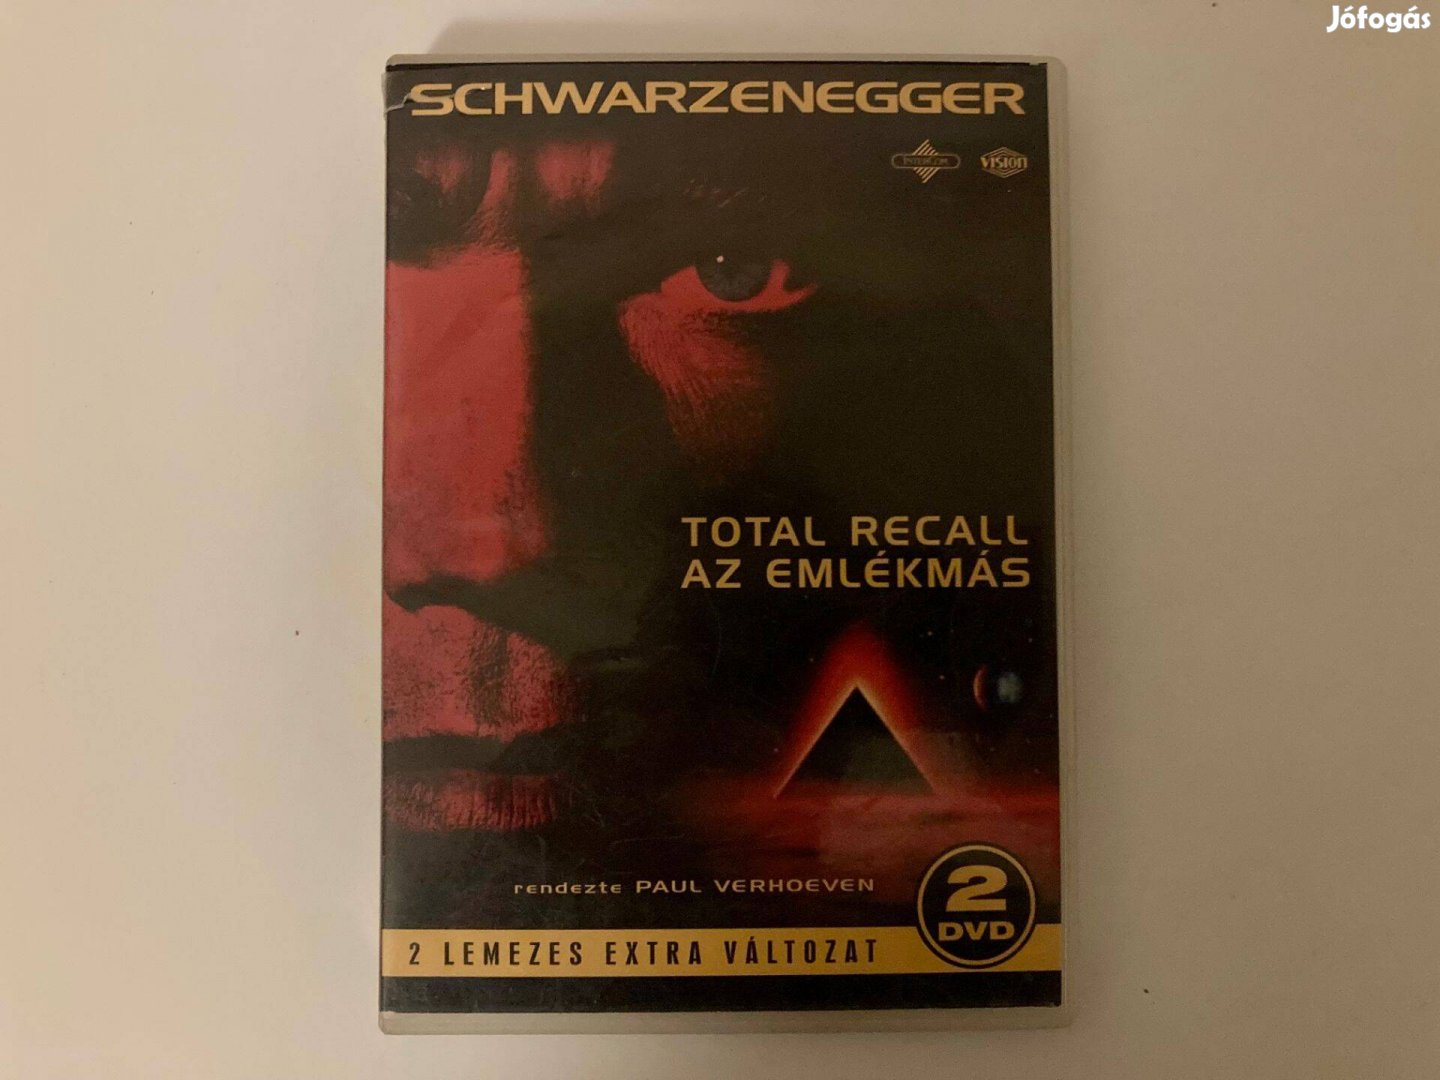 Swarzenegger - Total Recall - Emlékmás - 2 lemezes extra változat